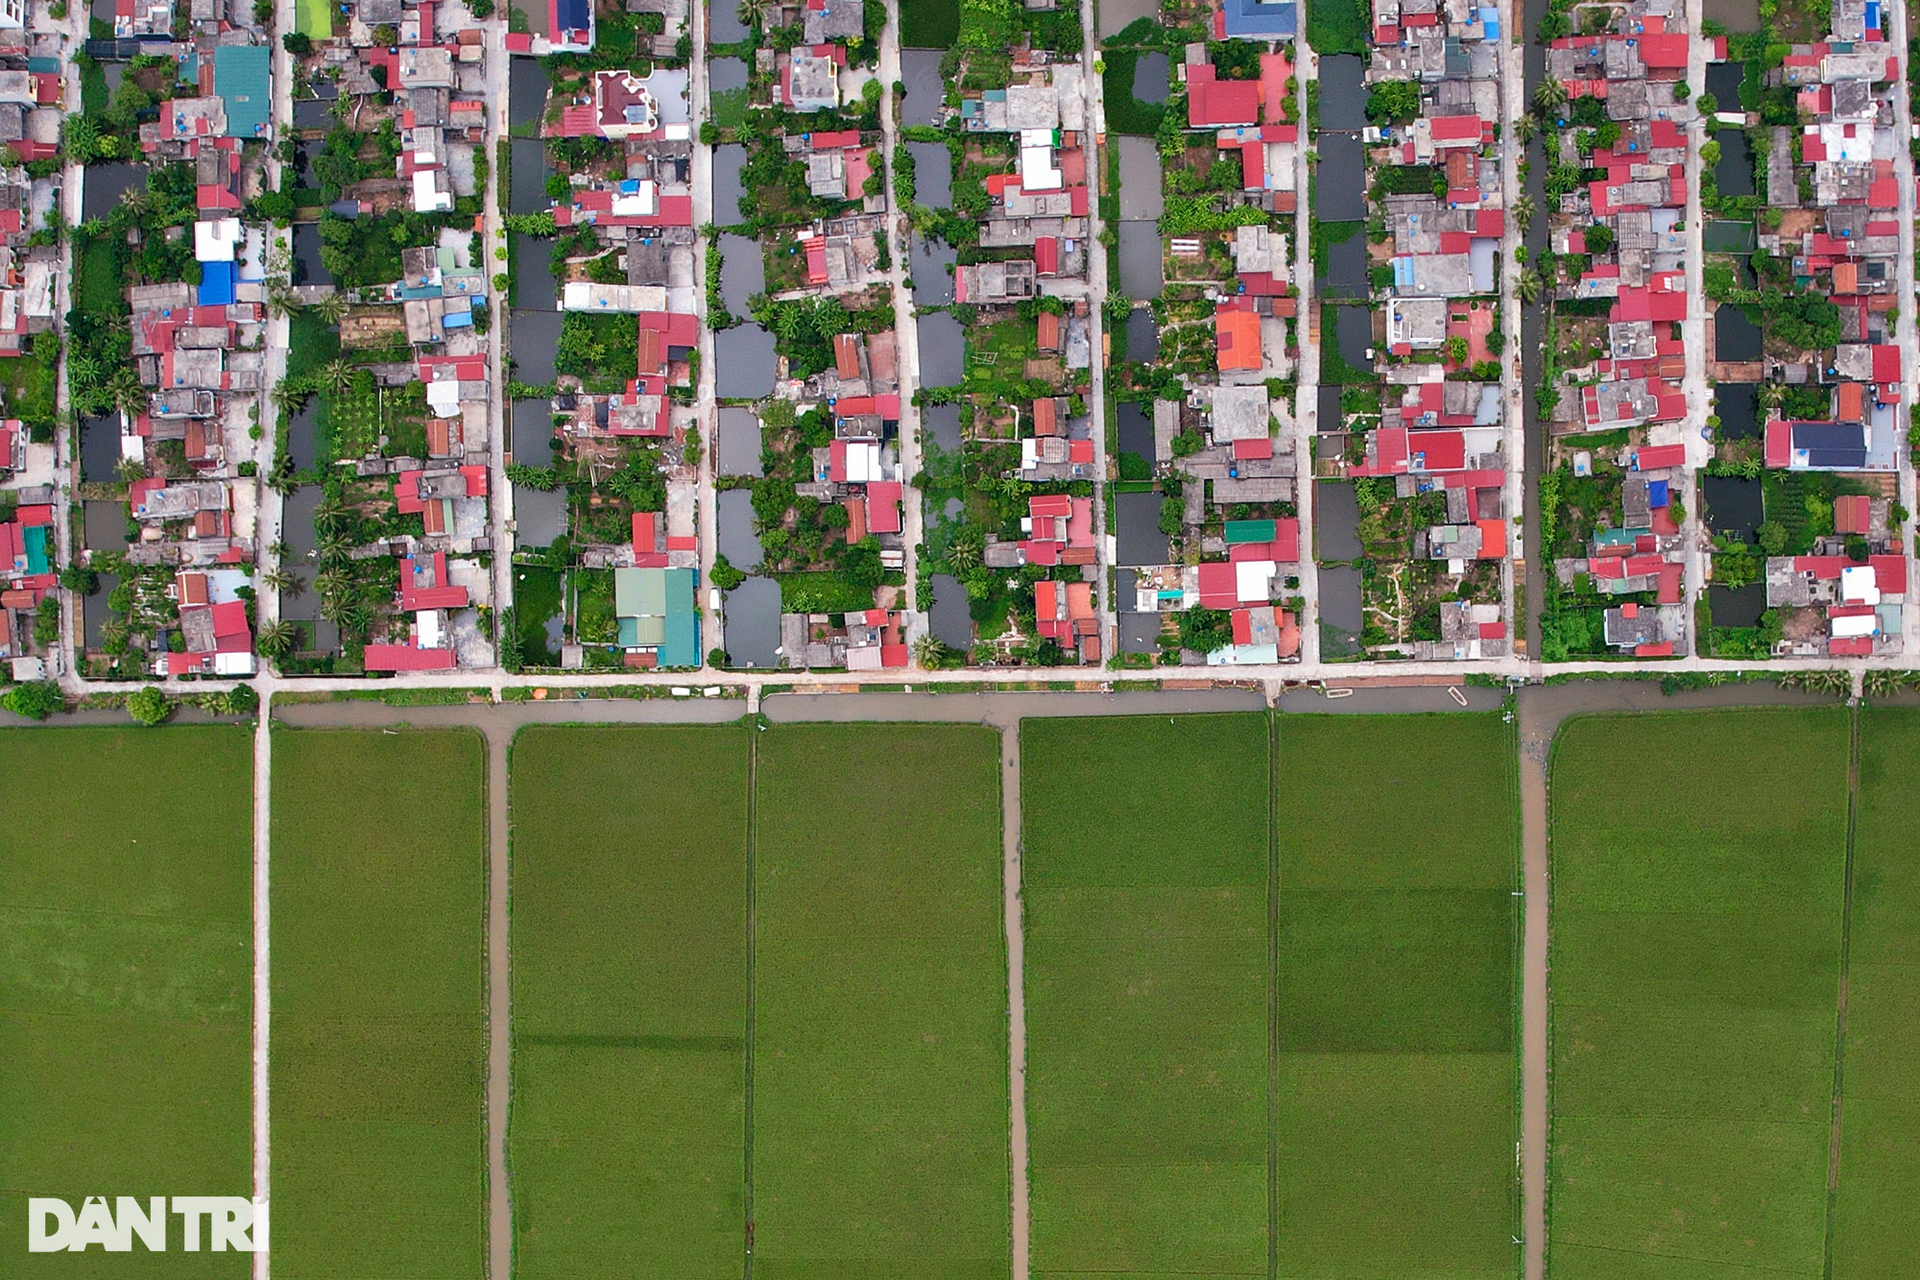 Quy hoạch bàn cờ khu dân cư đẹp như tranh ở làng ven biển Thái Bình - 6